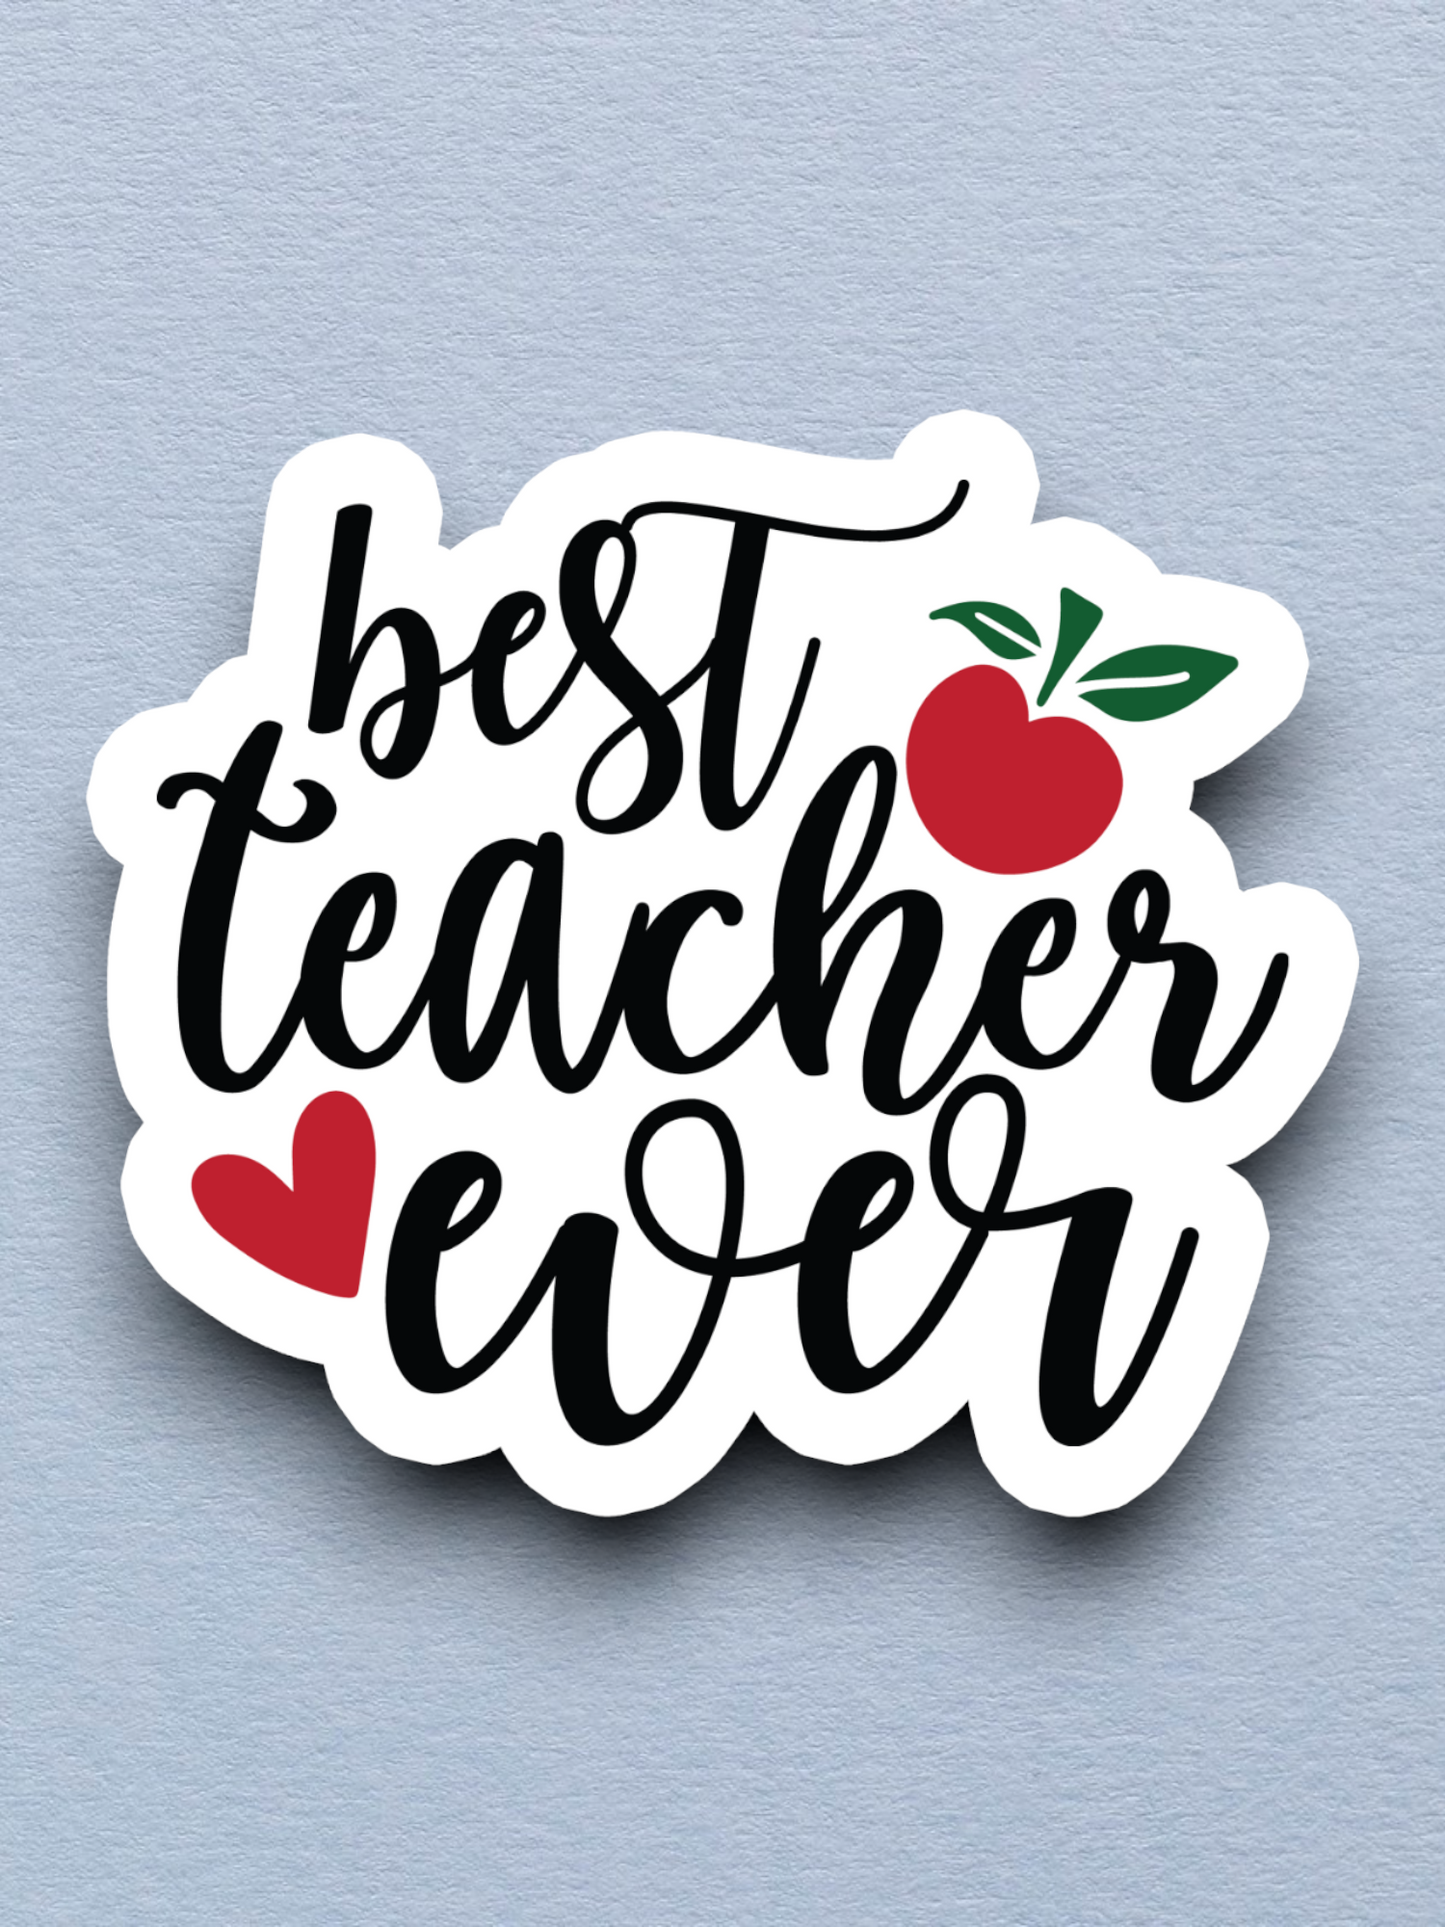 Best Teacher Ever  3 - School Sticker